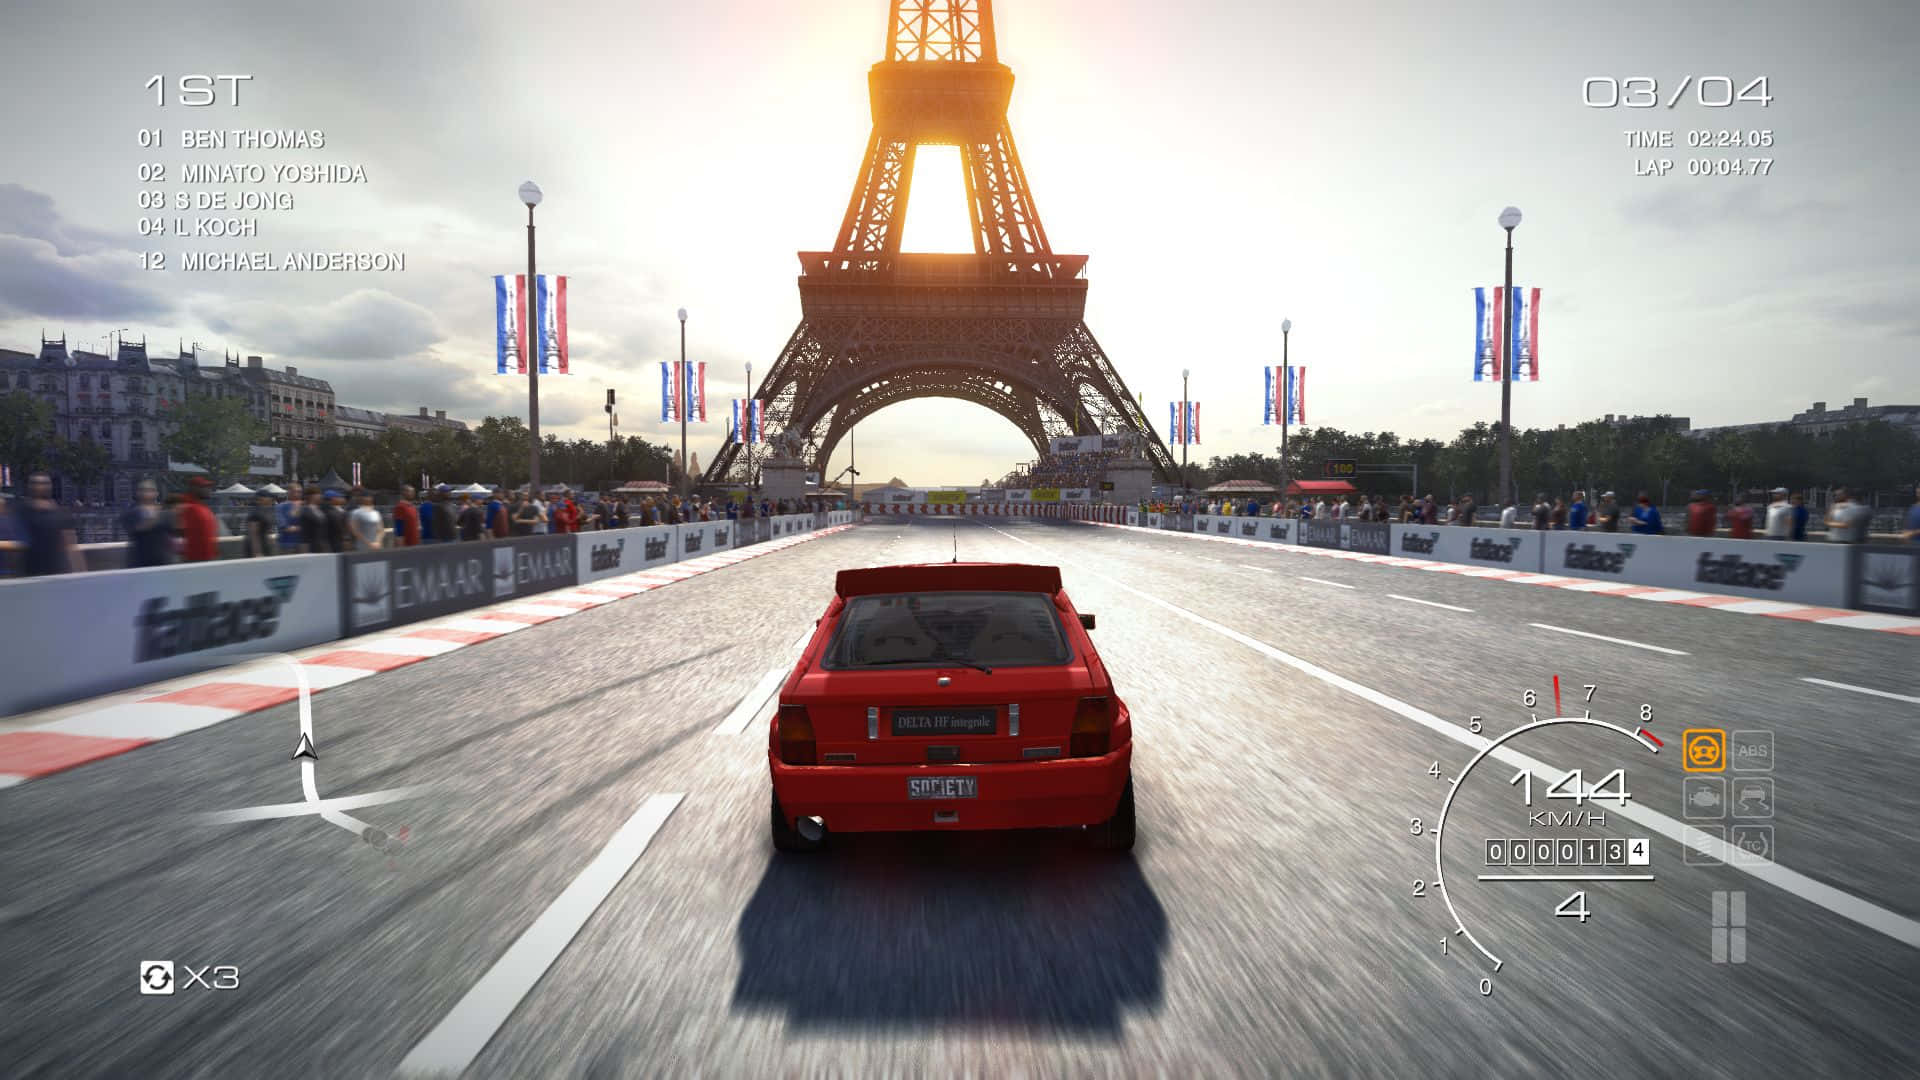 Enrød Bil Kører Ned Ad Vejen Med Eiffeltårnet I Baggrunden.